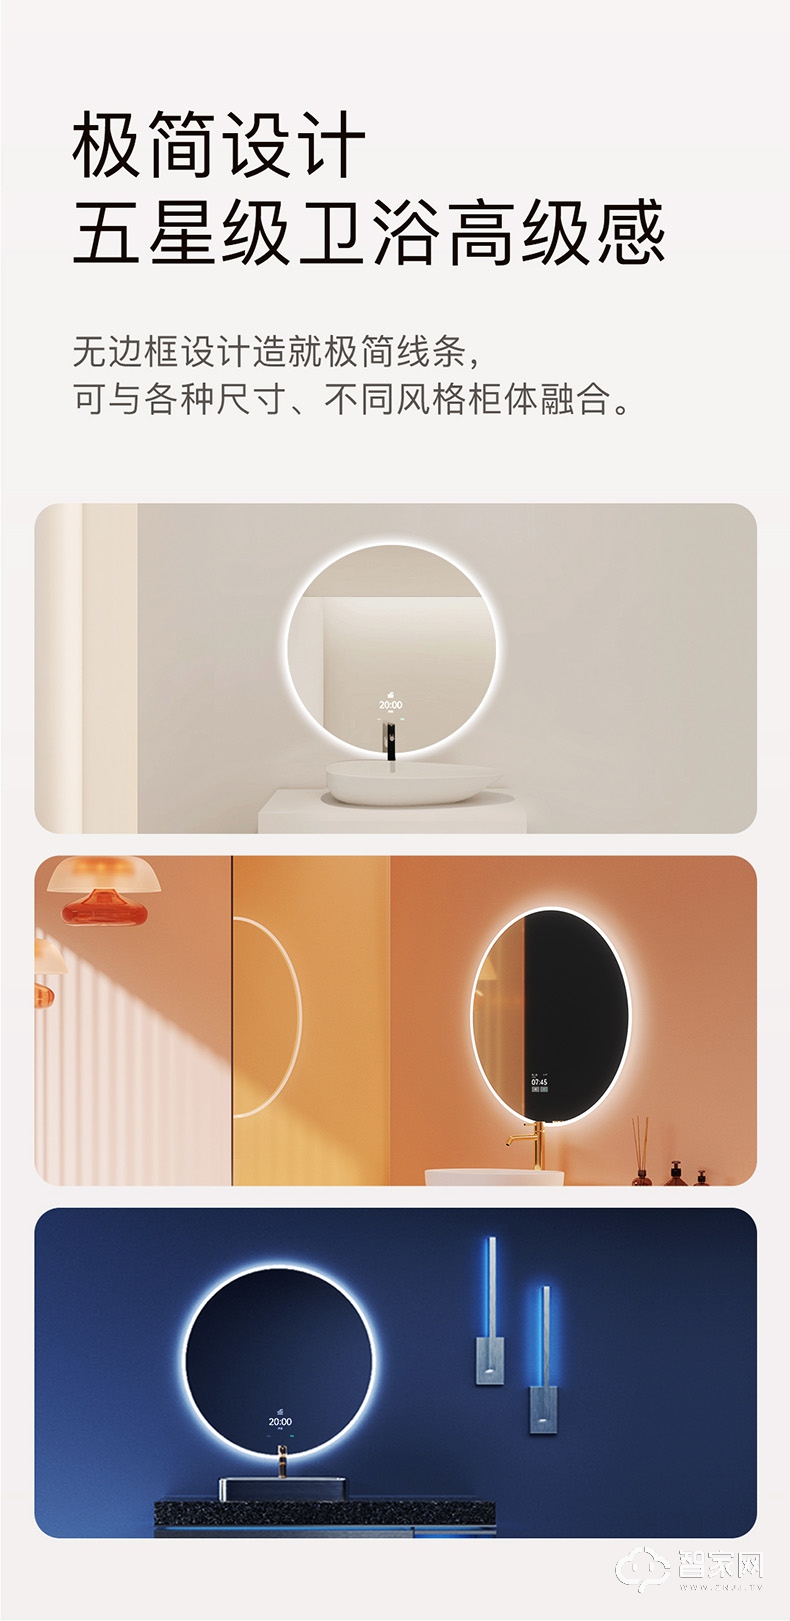  欧瑞博智能浴室镜 触摸屏带感应灯圆形防雾镜